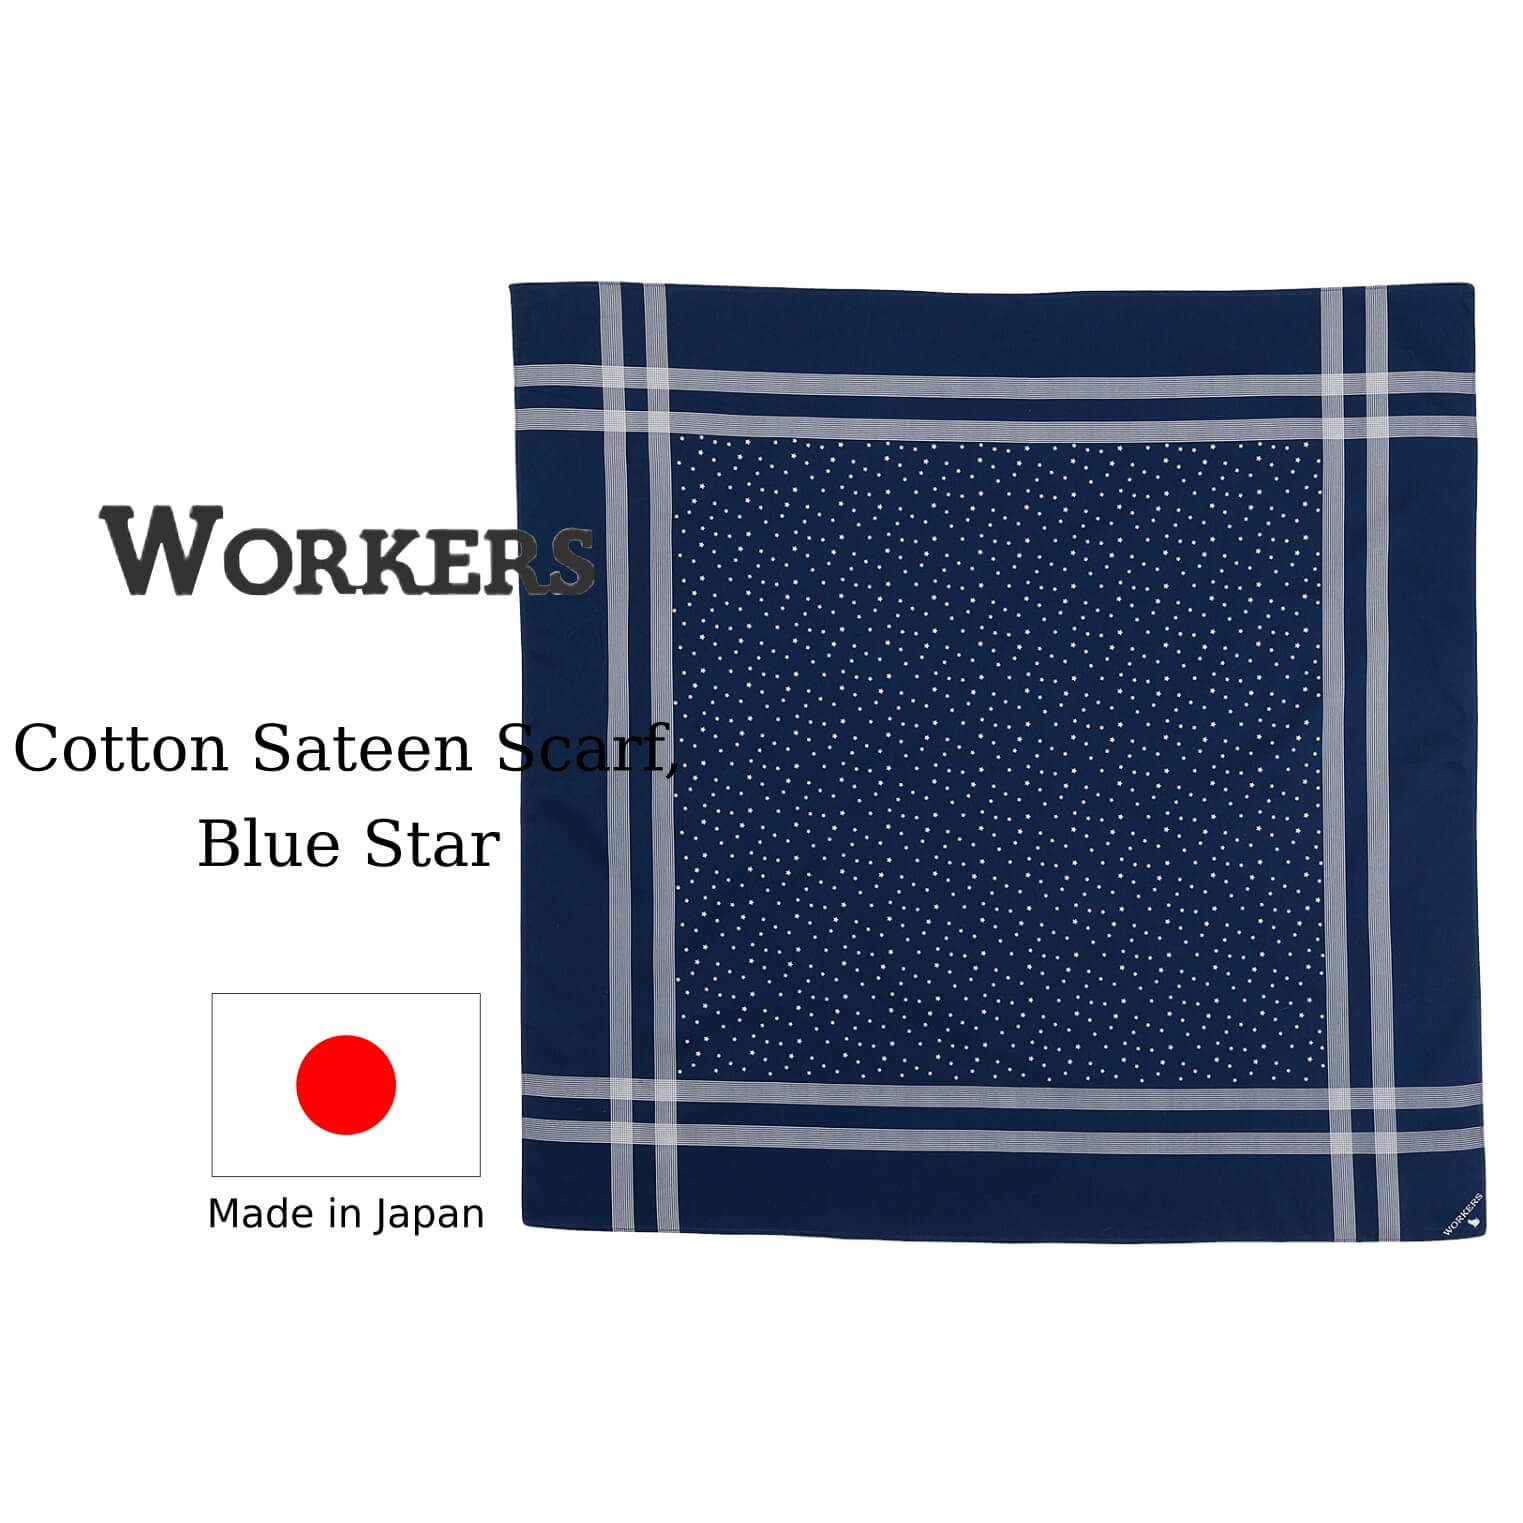 WORKERS ワーカーズ Cotton Sateen Scarf, コットンサテンスカーフ